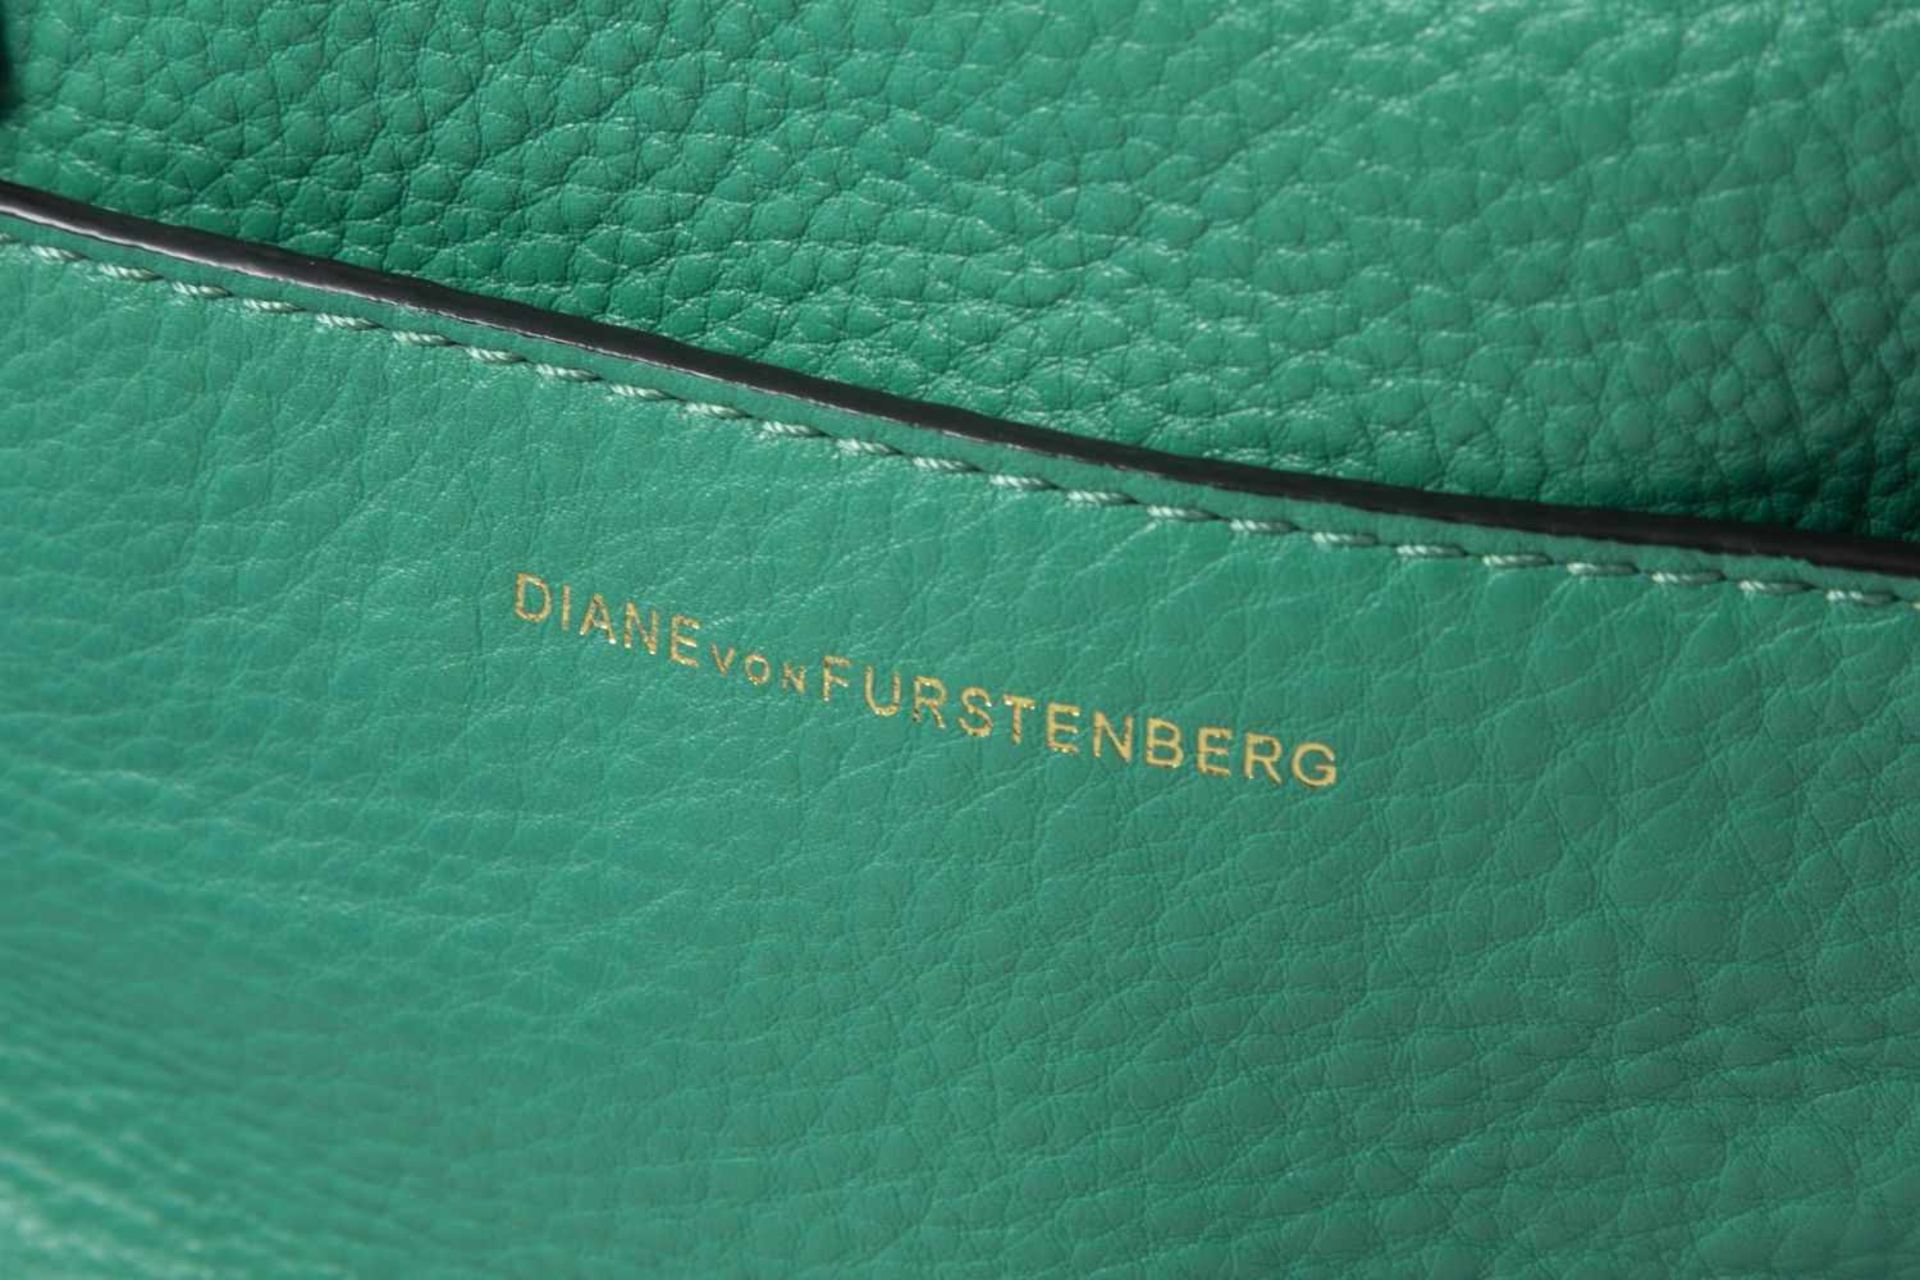 Handtasche von Diane von Fürstenberg und Celine-SeidentuchGrünes Nappaleder, seitliche Taschen in - Bild 2 aus 3